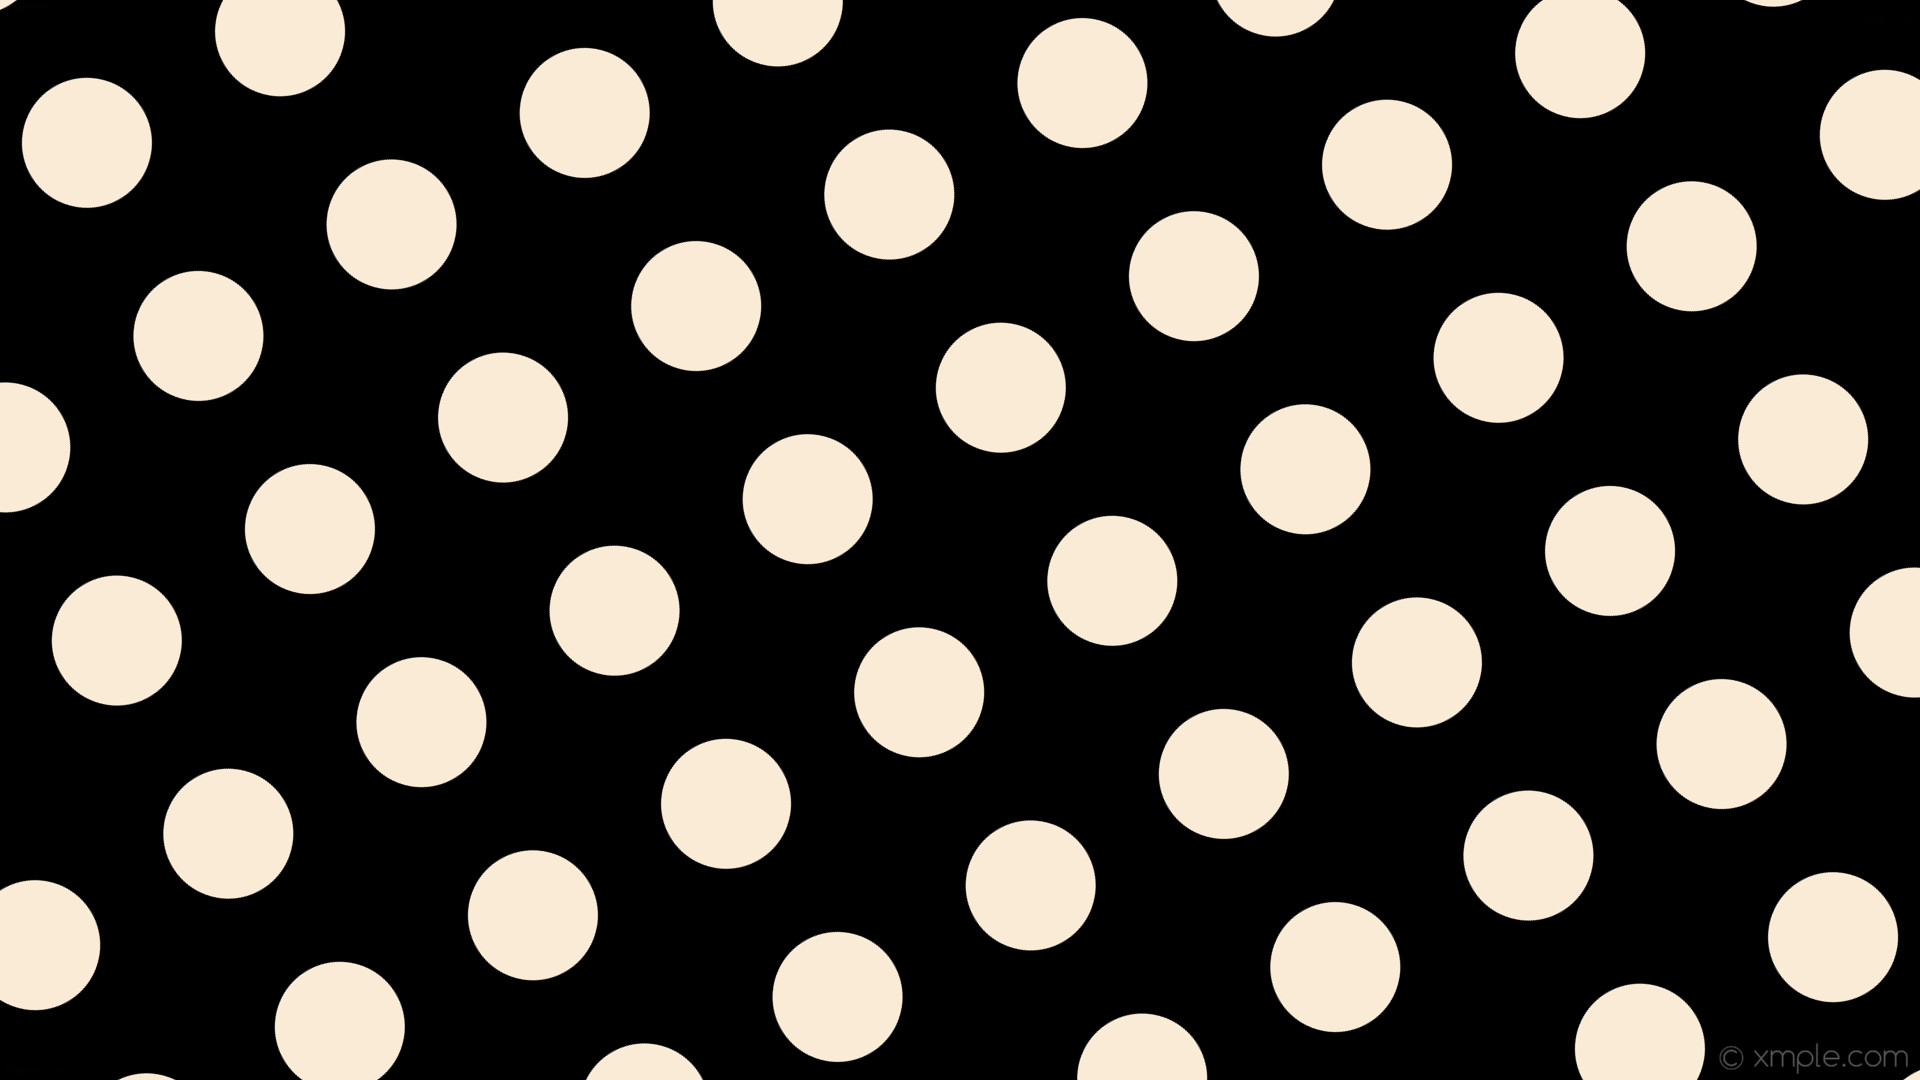 1920x1080 wallpaper spots black dots white polka antique white #000000 #faebd7 30Â°  130px 223px